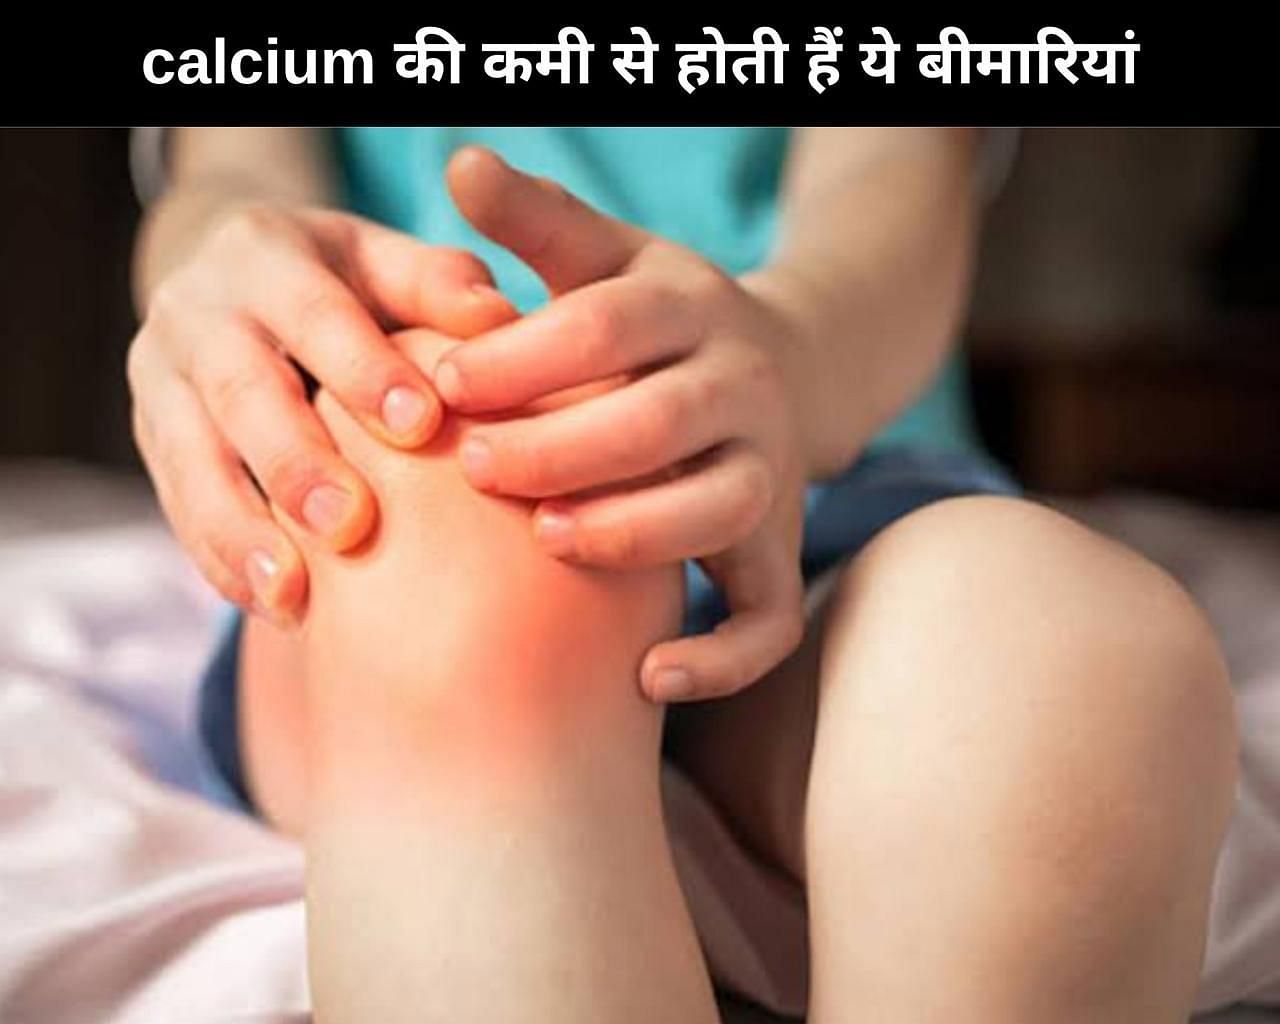 calcium की कमी से होती हैं ये 7 बीमारियां (फोटो - sportskeedaहिन्दी)